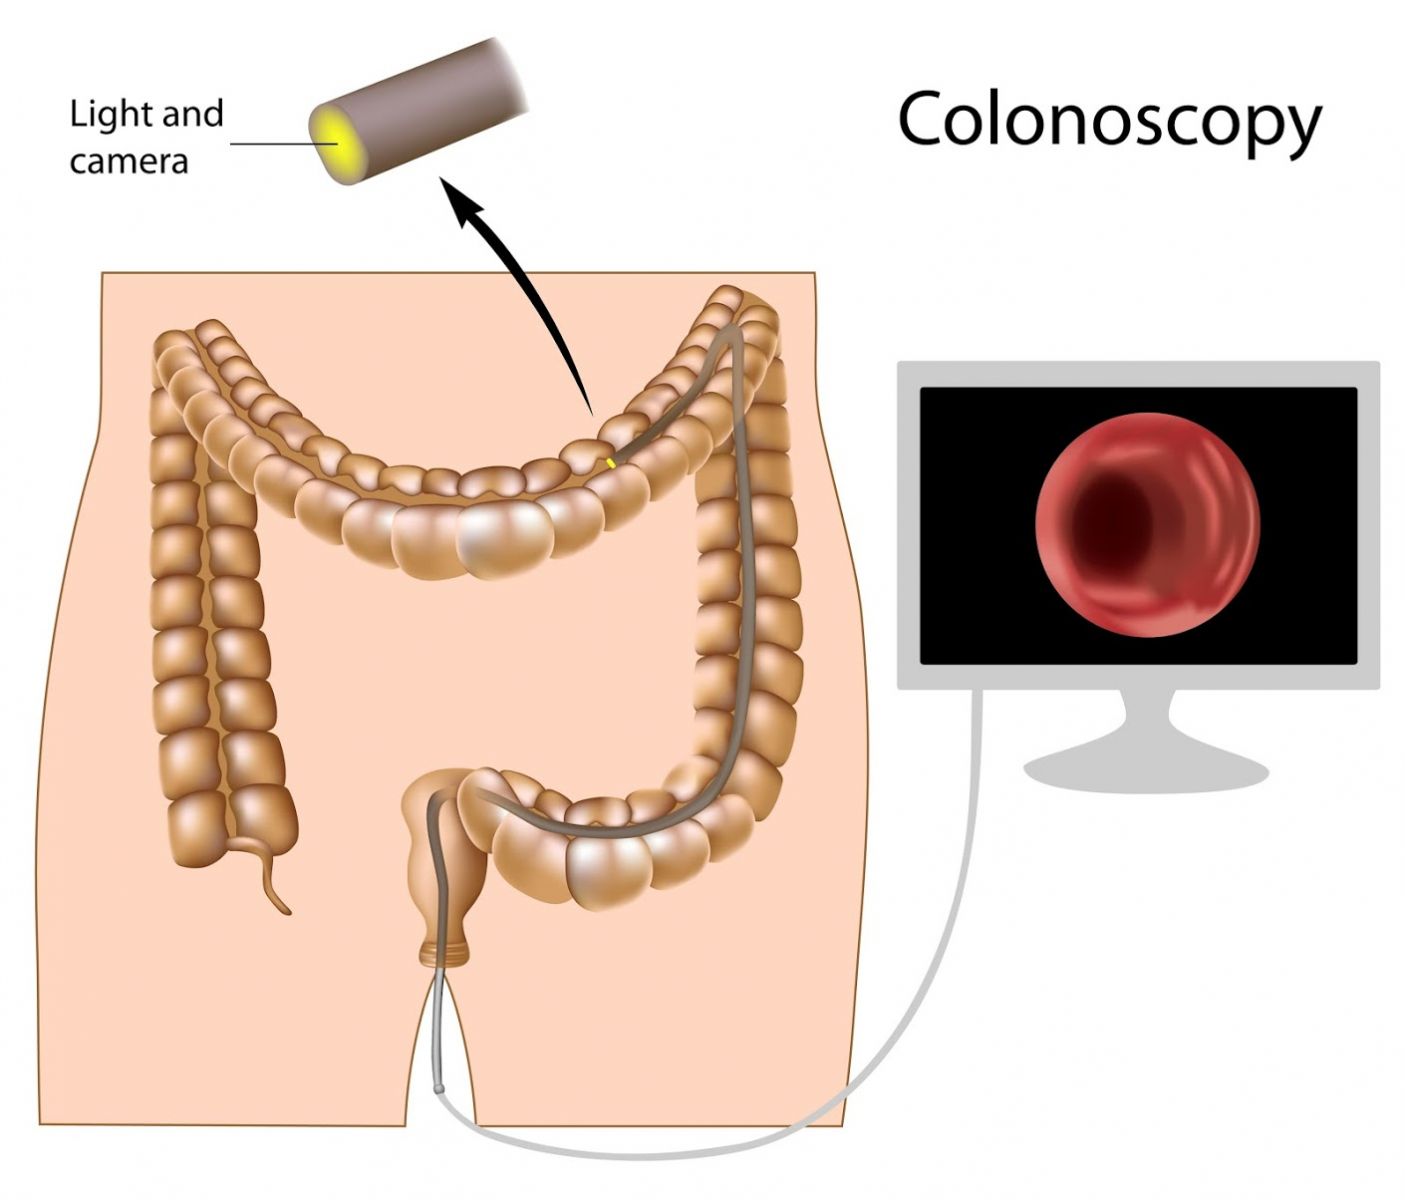 تنظير القولون – Colonoscopy: يتم اللجوء اليه لفحص القولون العصبي في بعض الاخيان